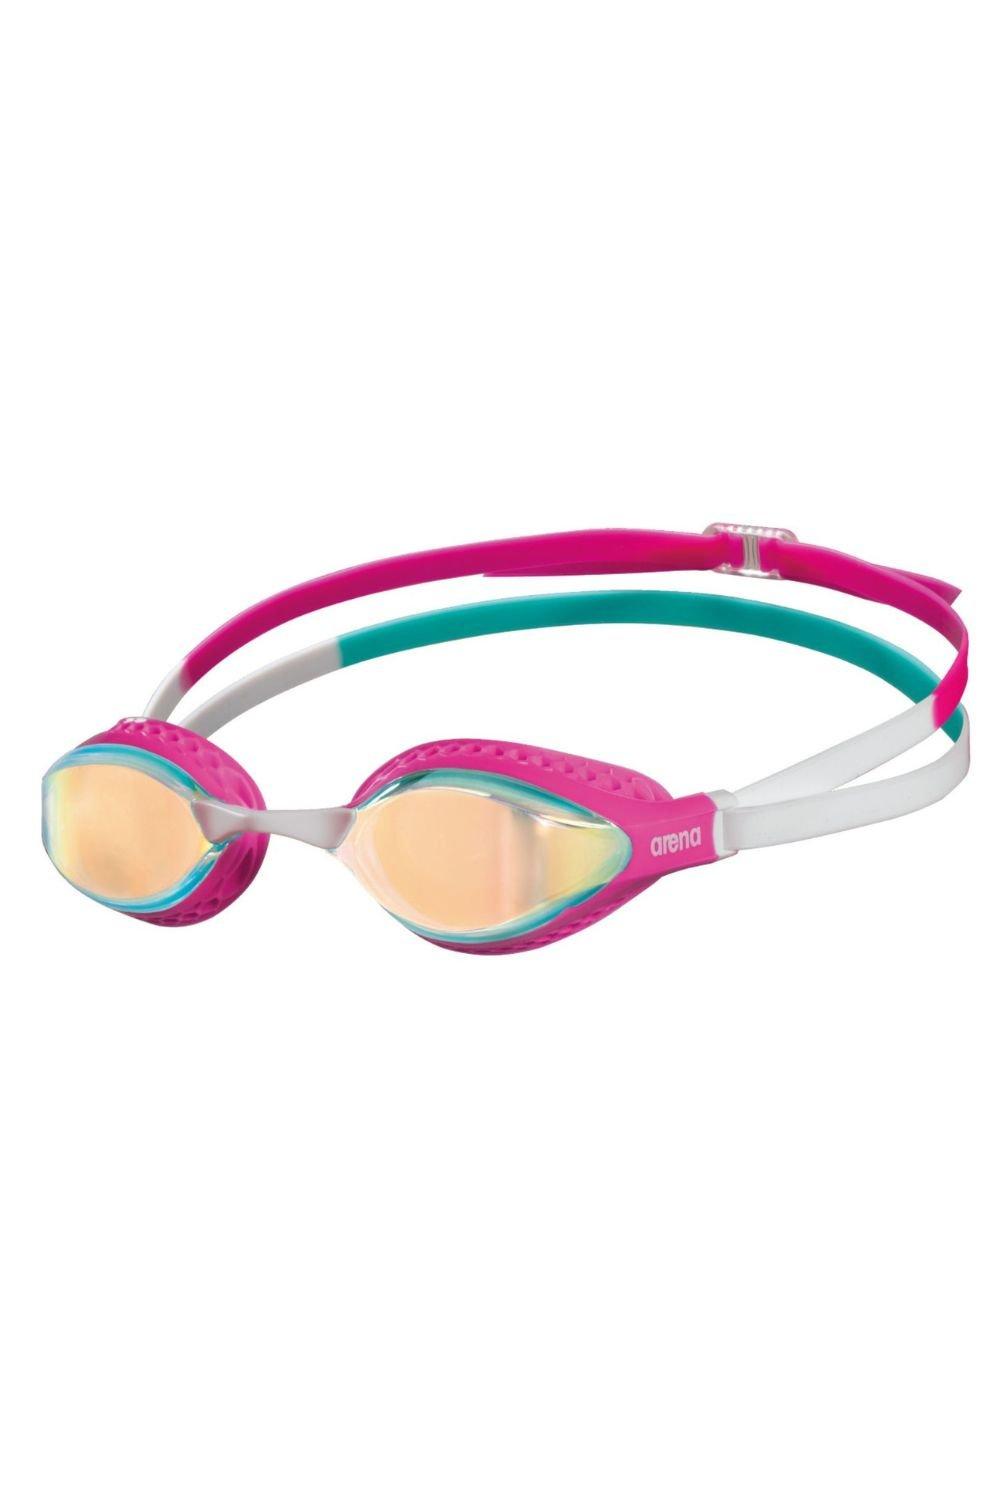 Очки для плавания с зеркалом Airspeed Arena, розовый очки для плавания arena airspeed clear turquoise